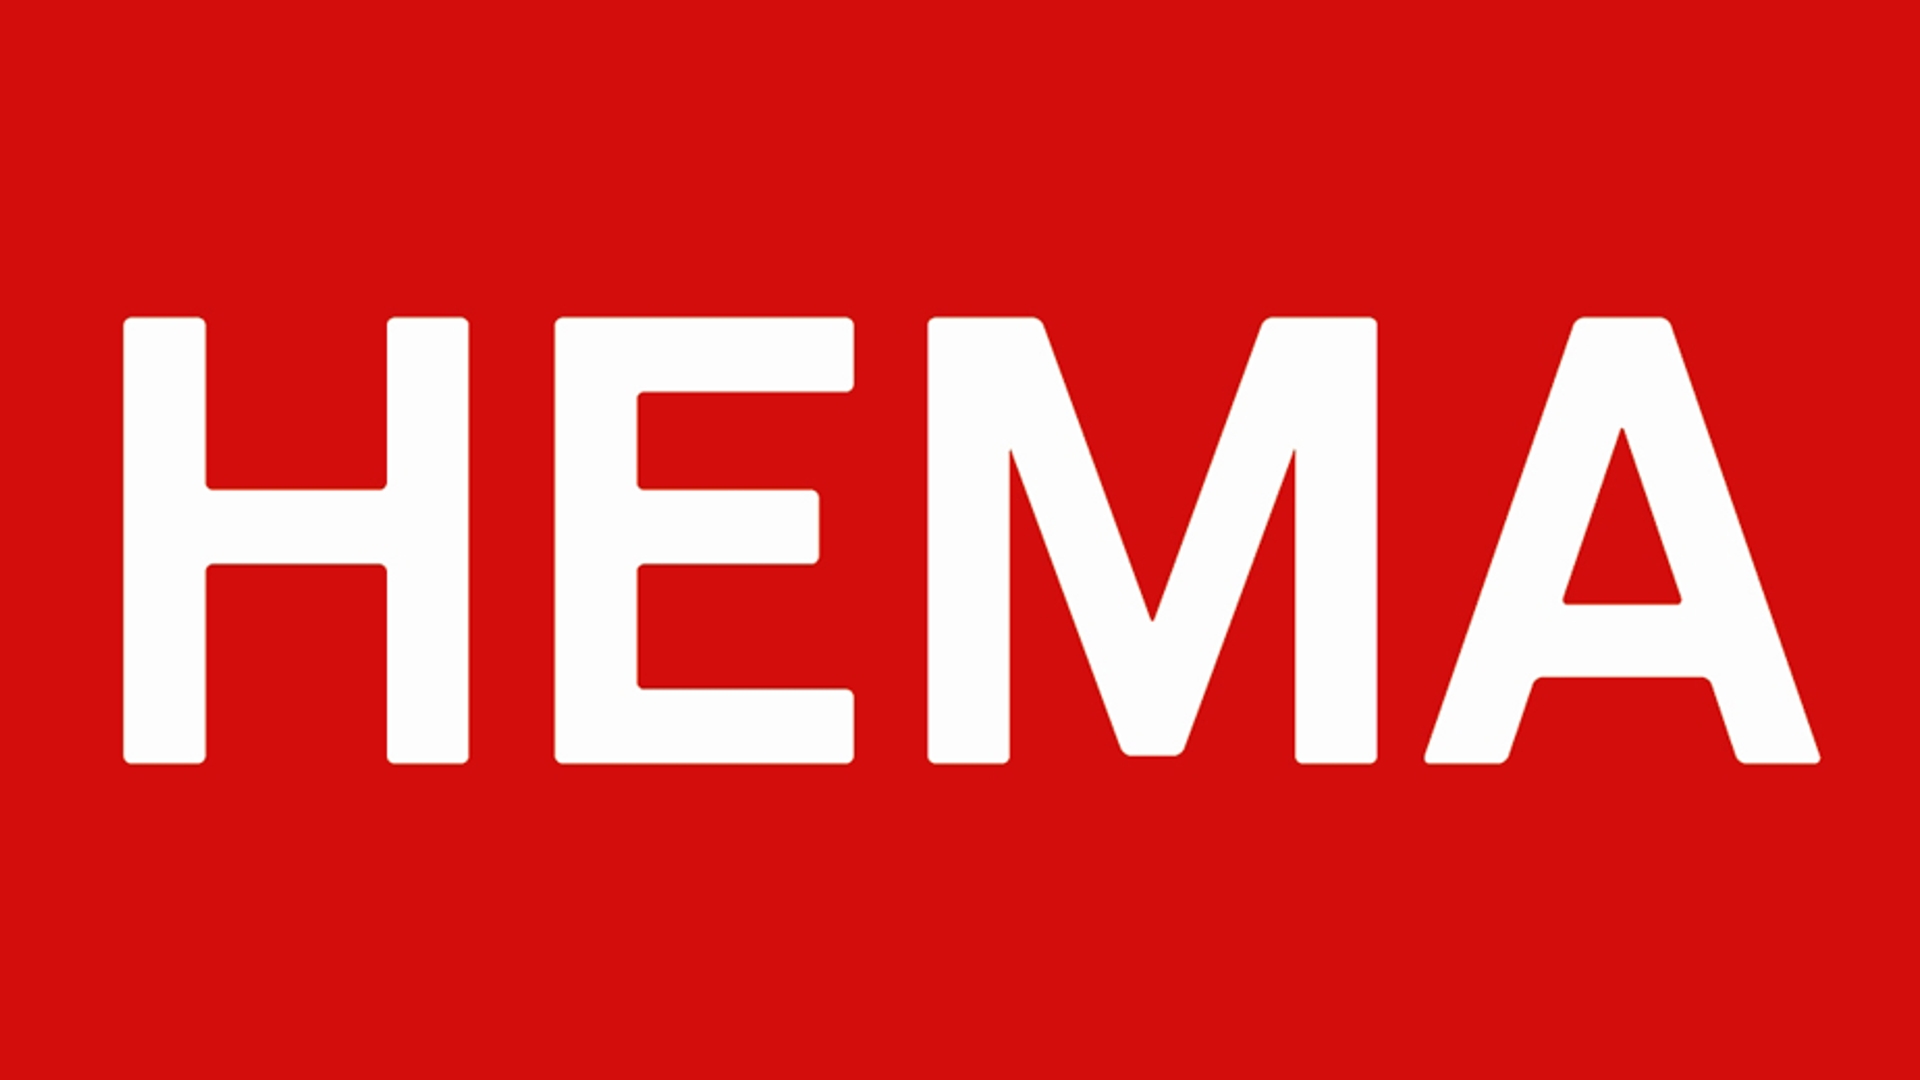 HEMA logo 930 X 520